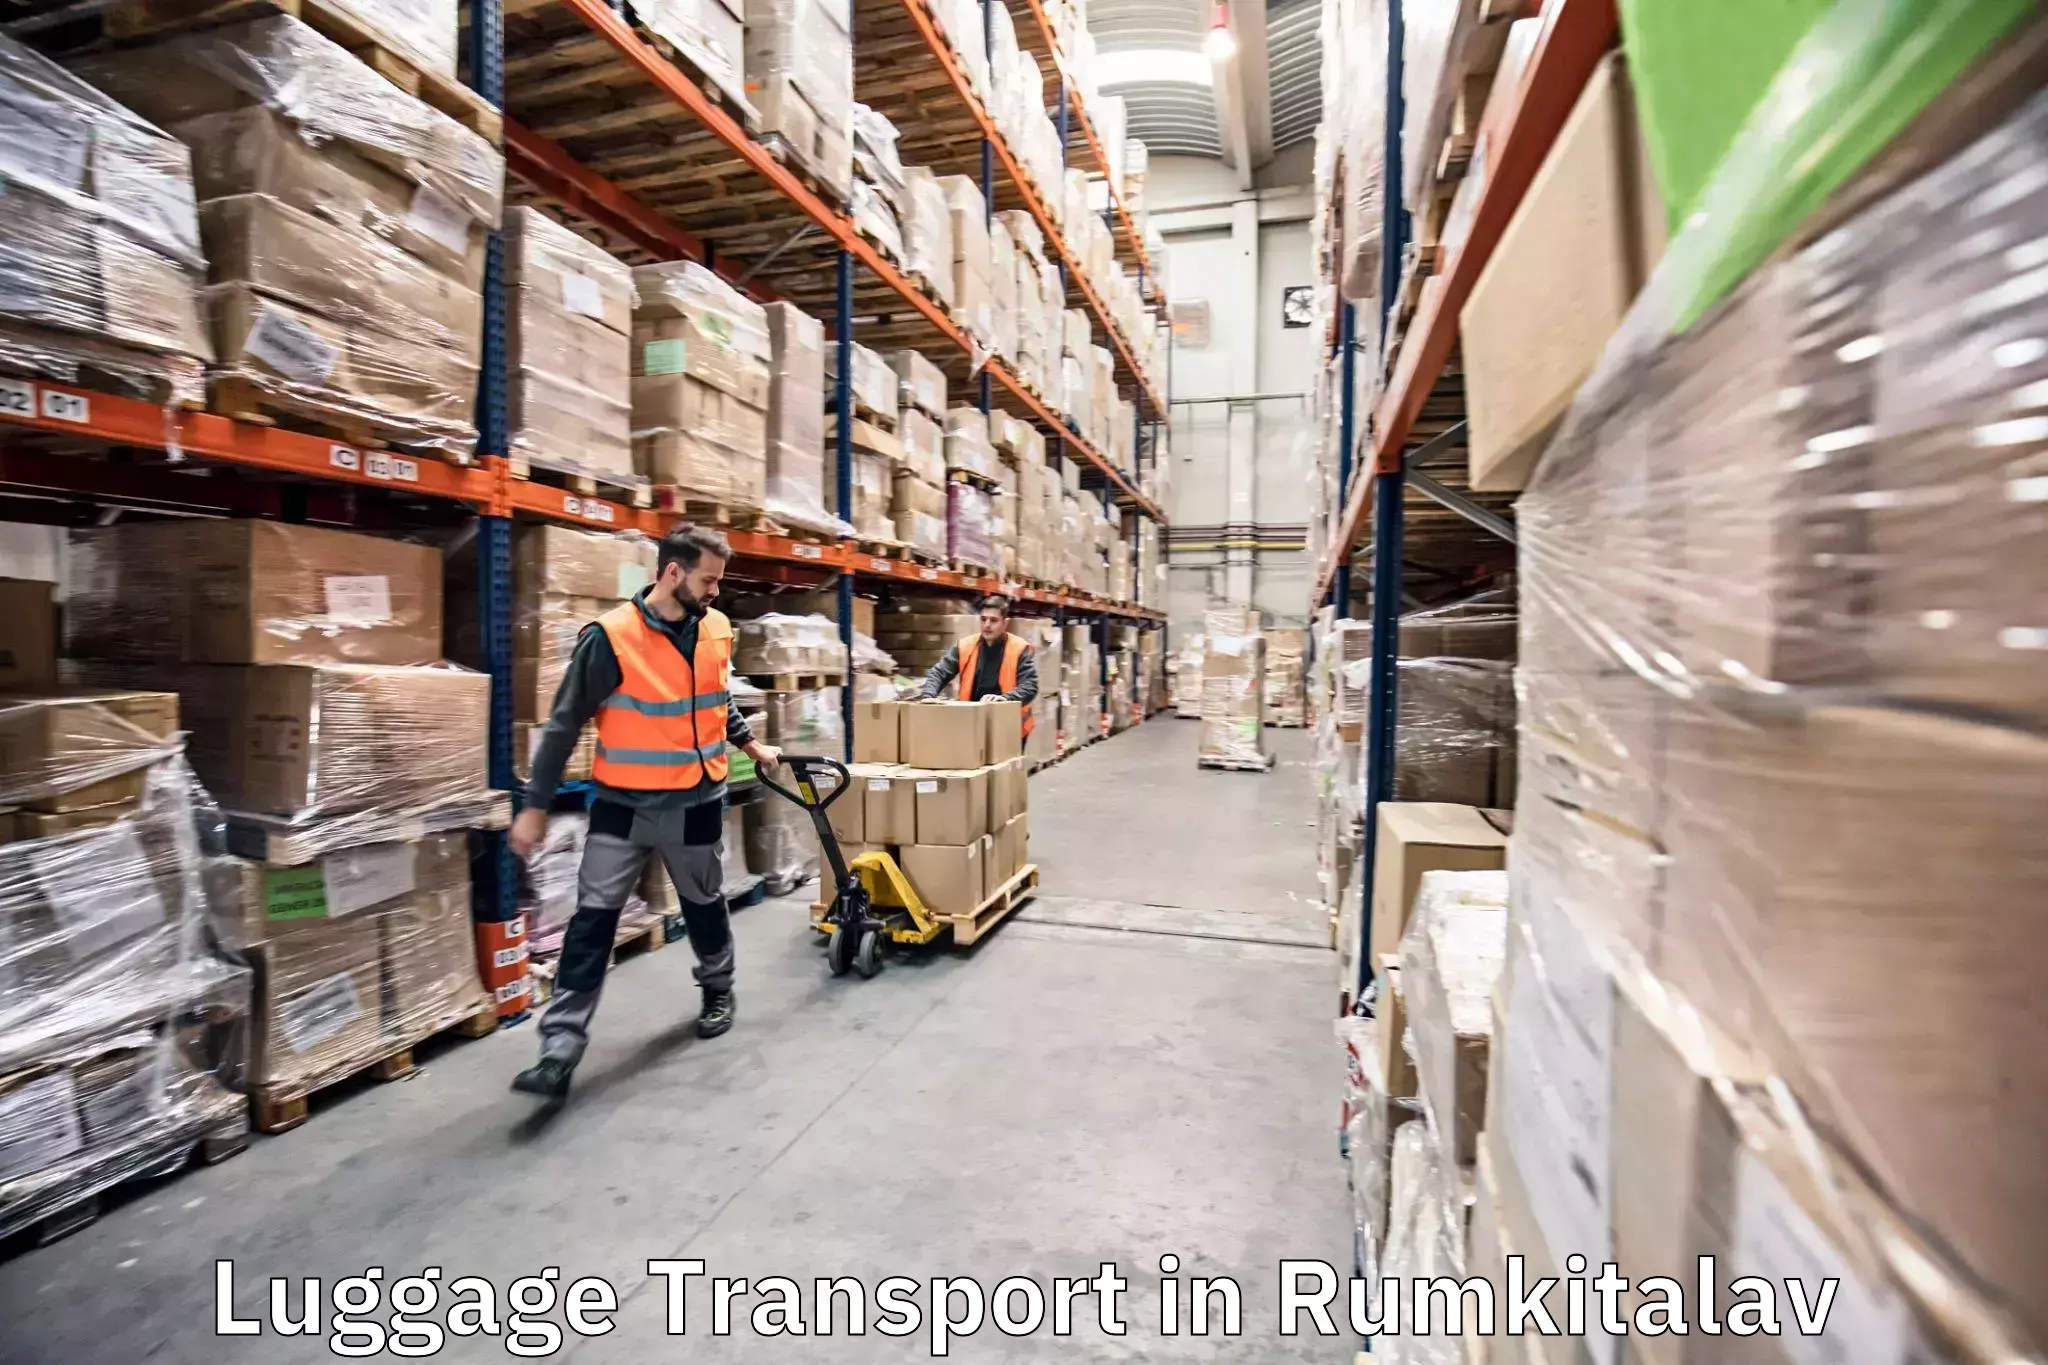 Baggage shipping service in Rumkitalav